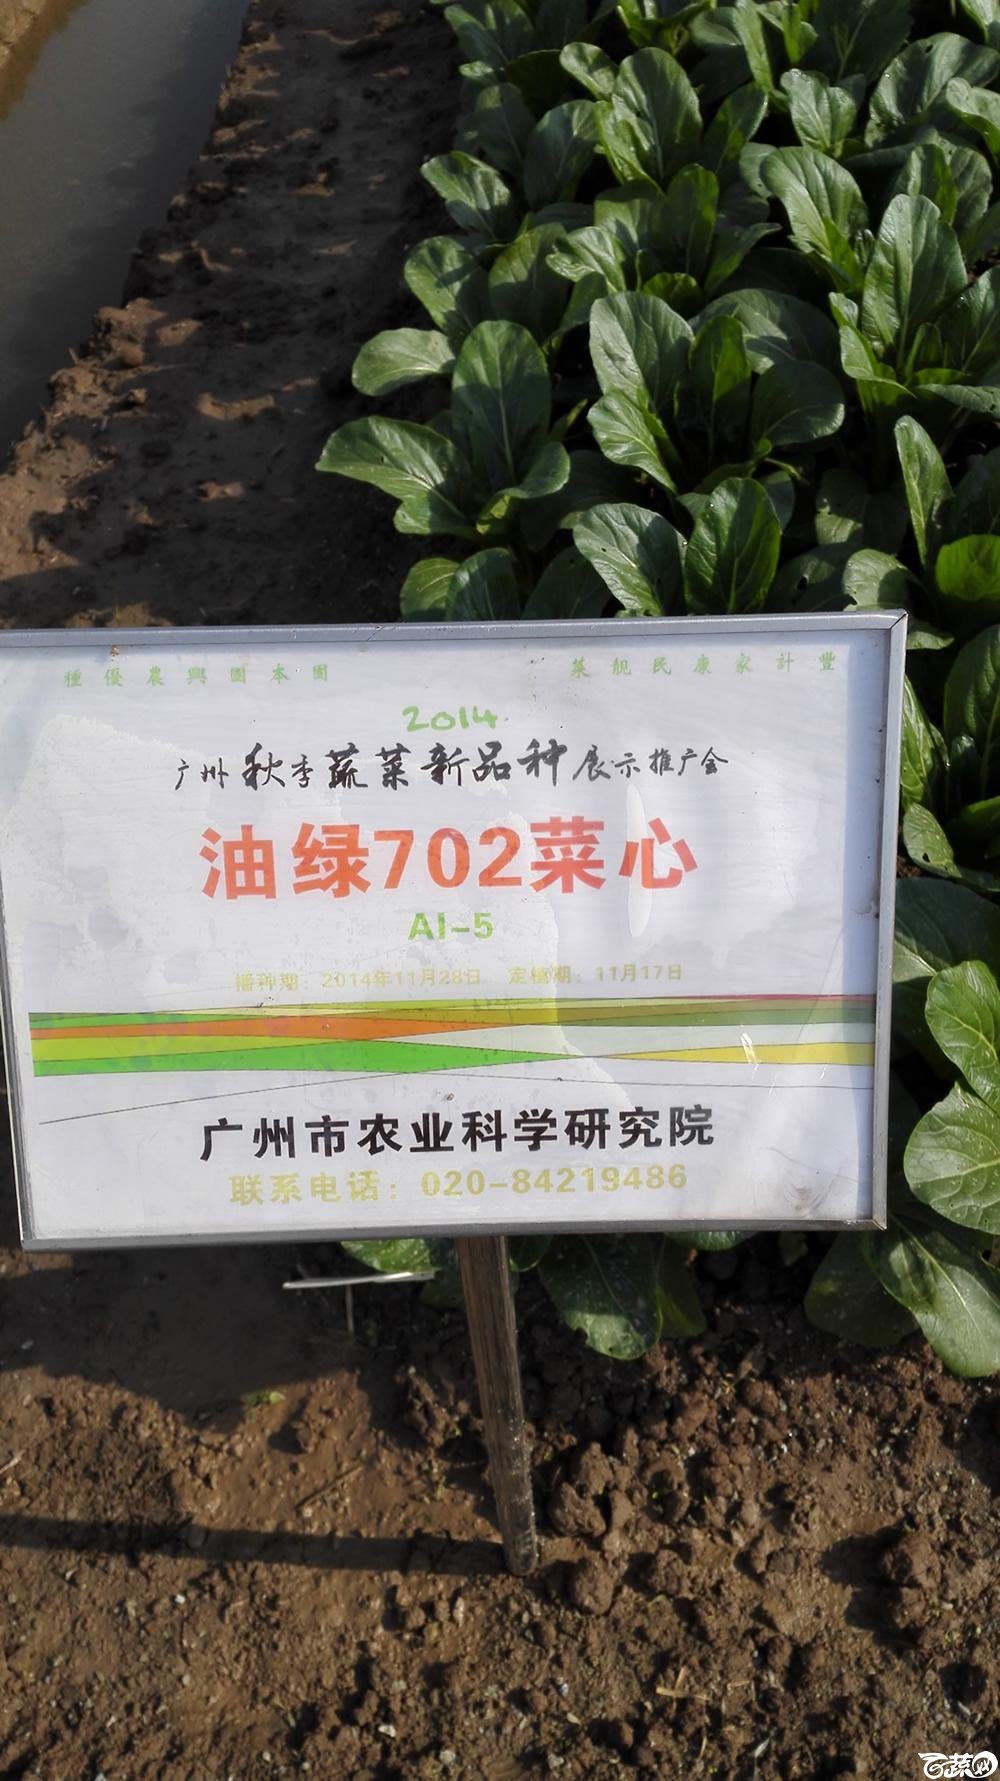 2014年12月10号广州市农科院南沙秋季蔬菜新品种展示会_叶菜_023.jpg